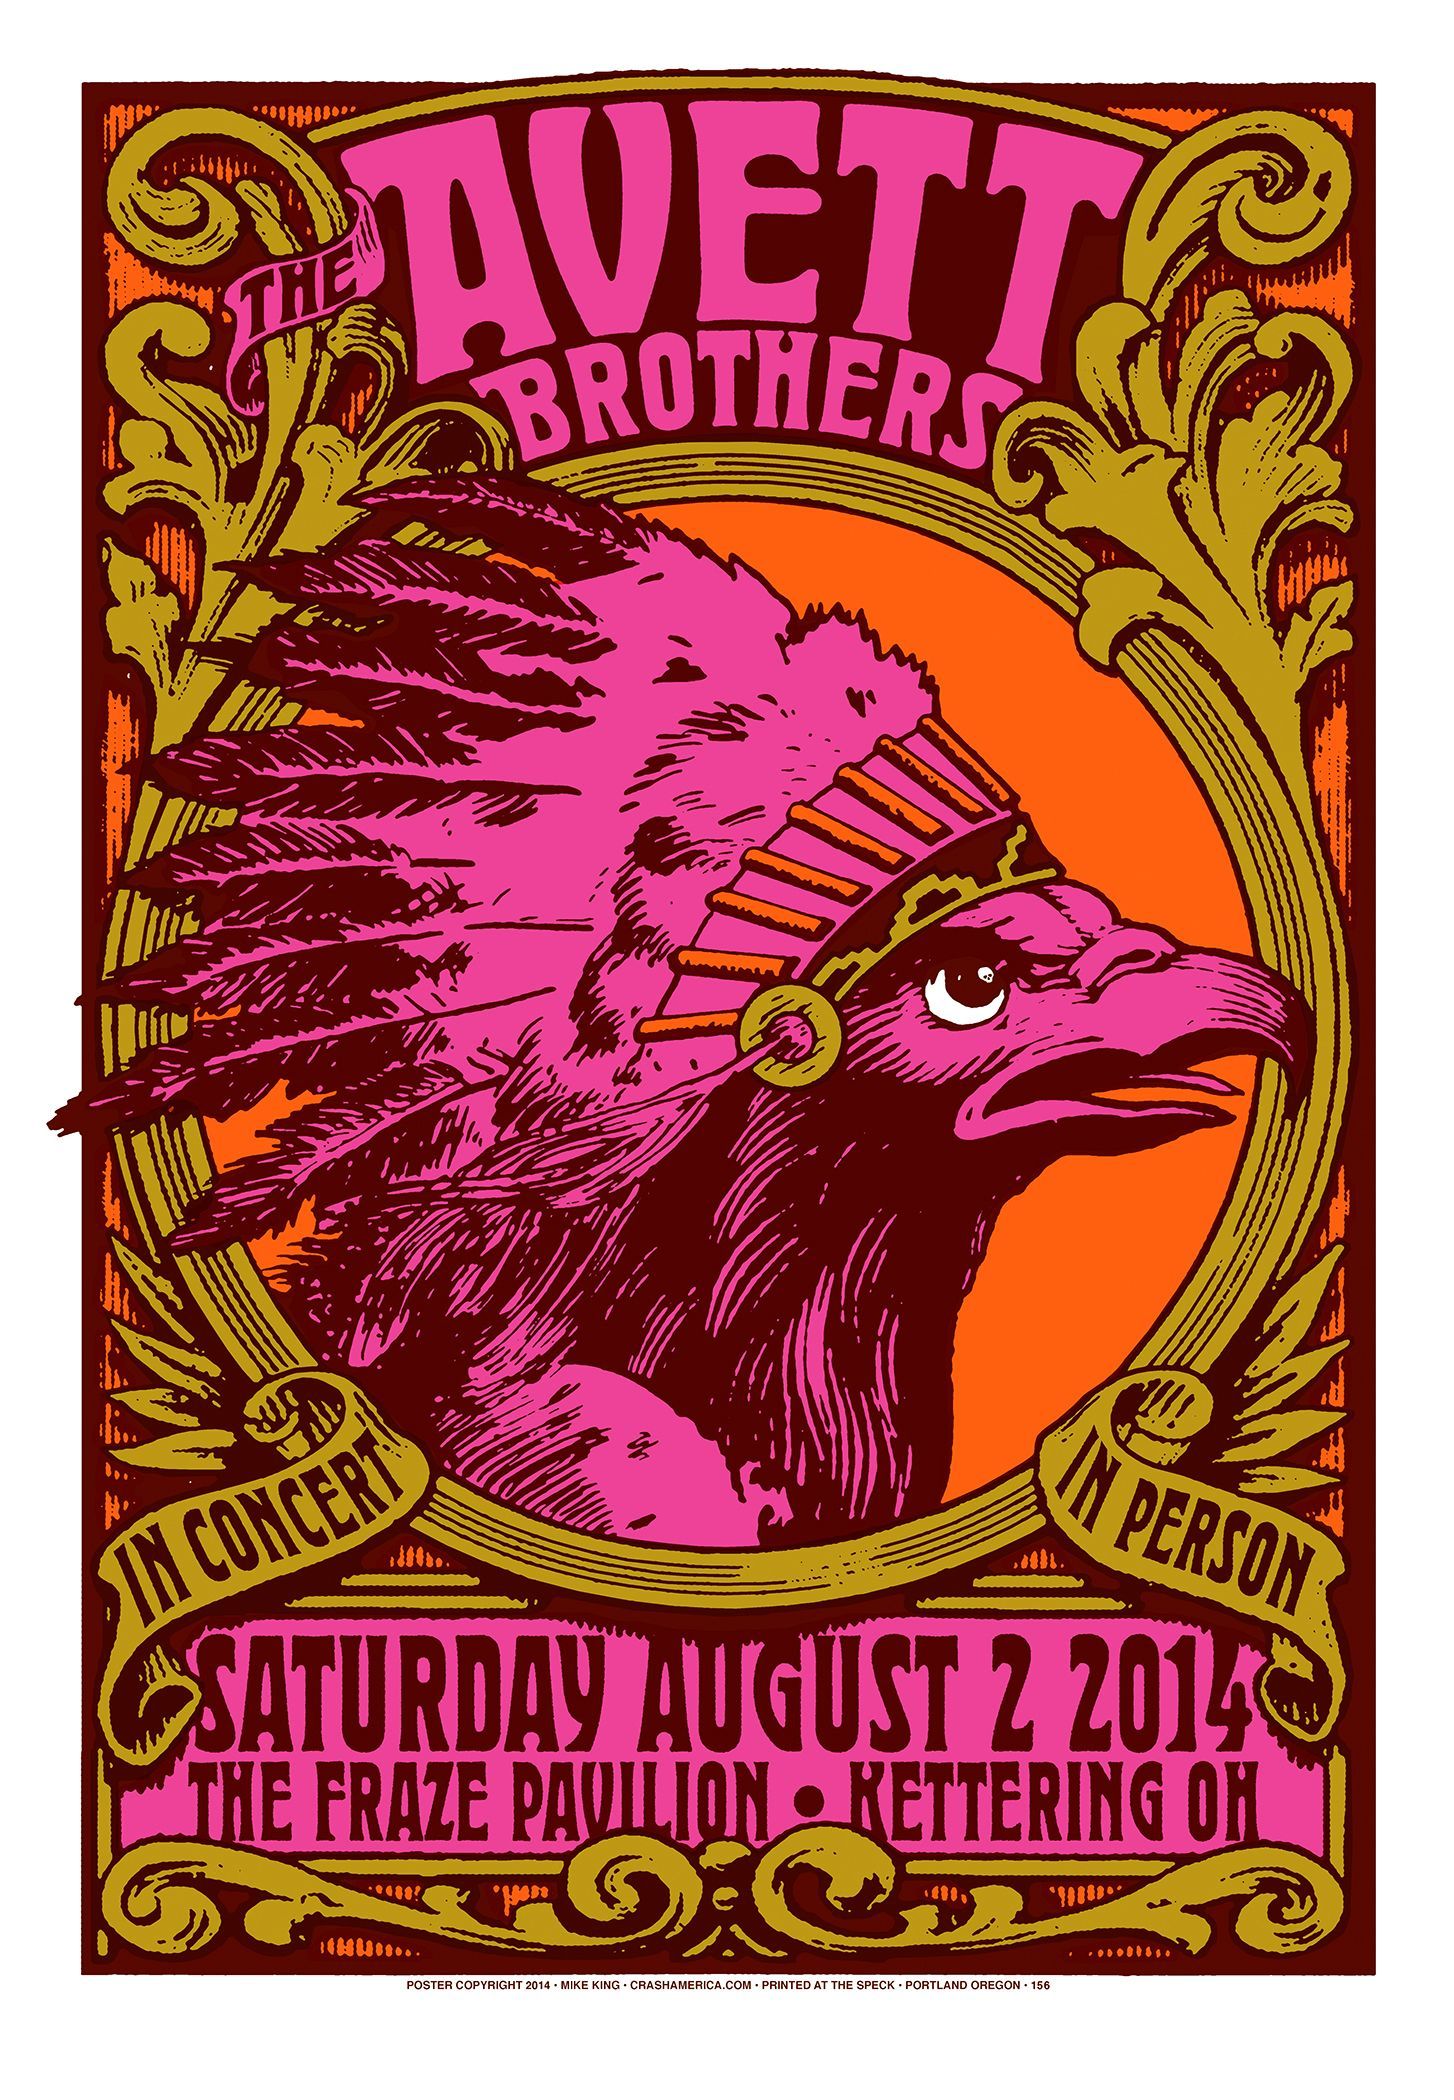 MXP-15.1 Avett Brothers 2014 Fraze Pavilion  Aug 2 Concert Poster